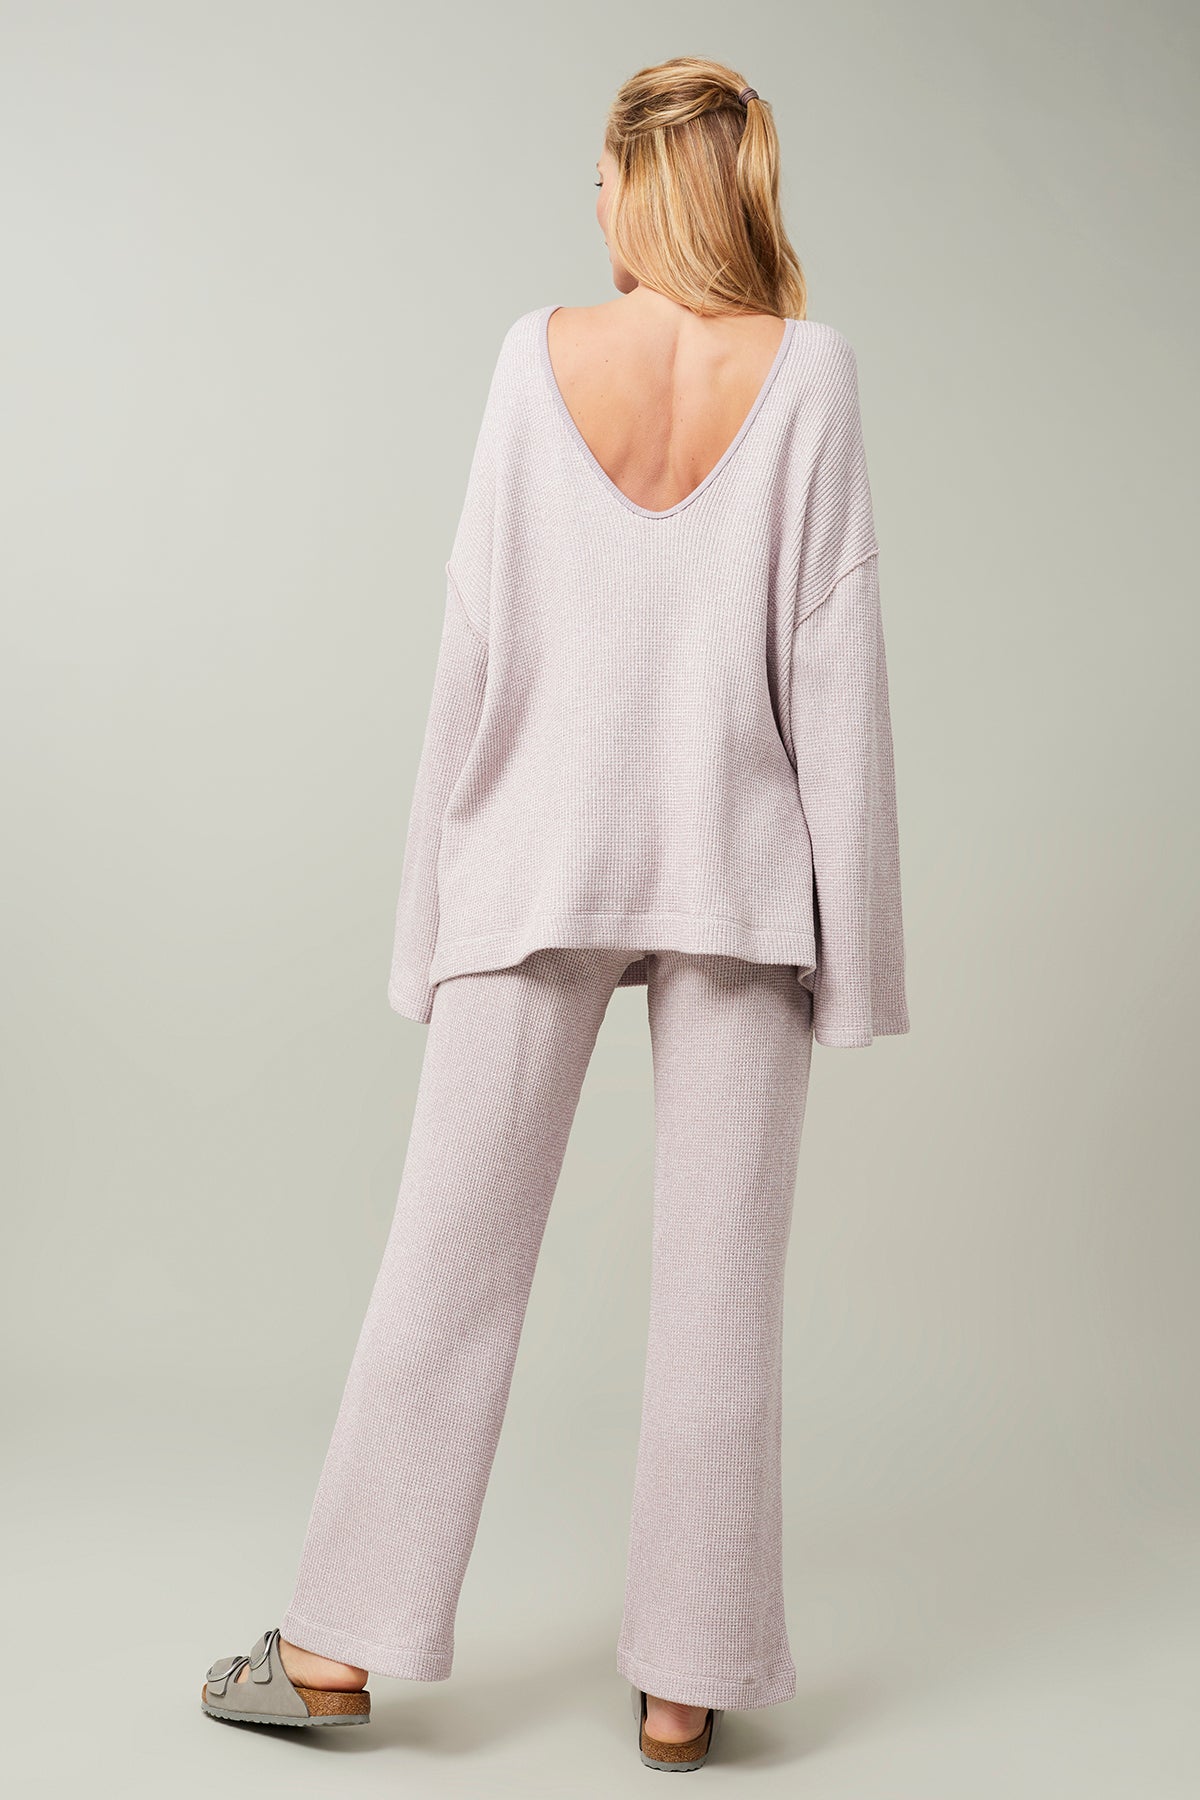 All Comfy Sweater + Retreat Pants (Magnolia)